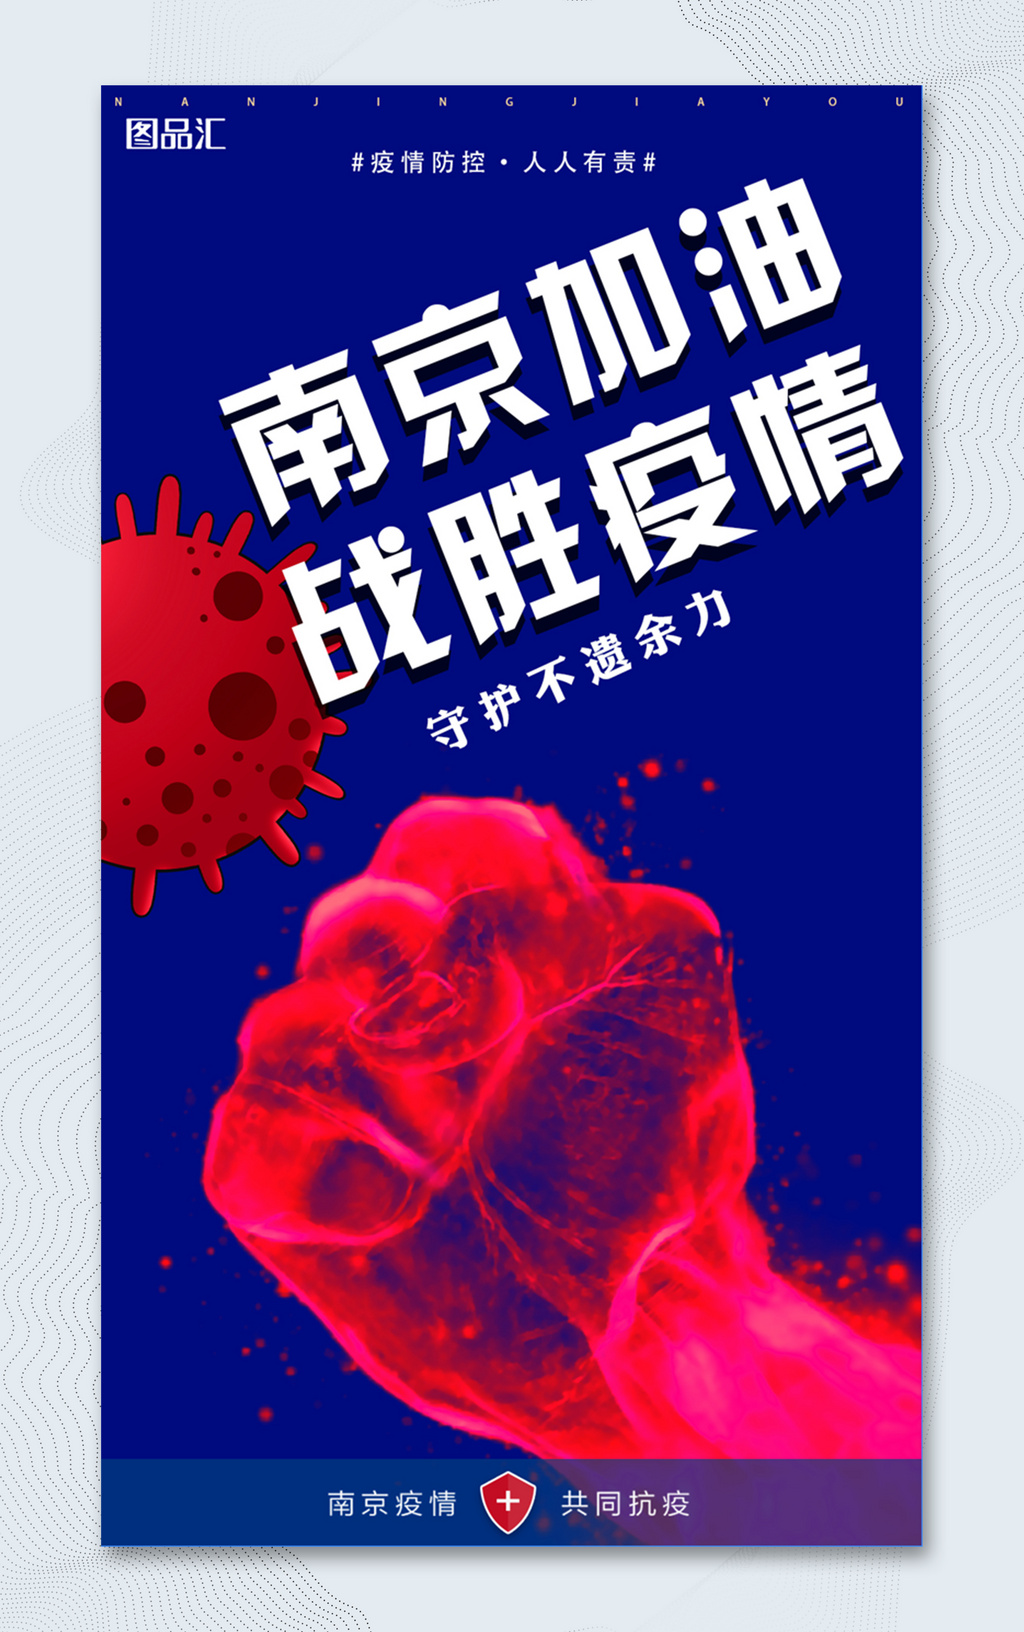 南京加油战胜疫情宣传海报